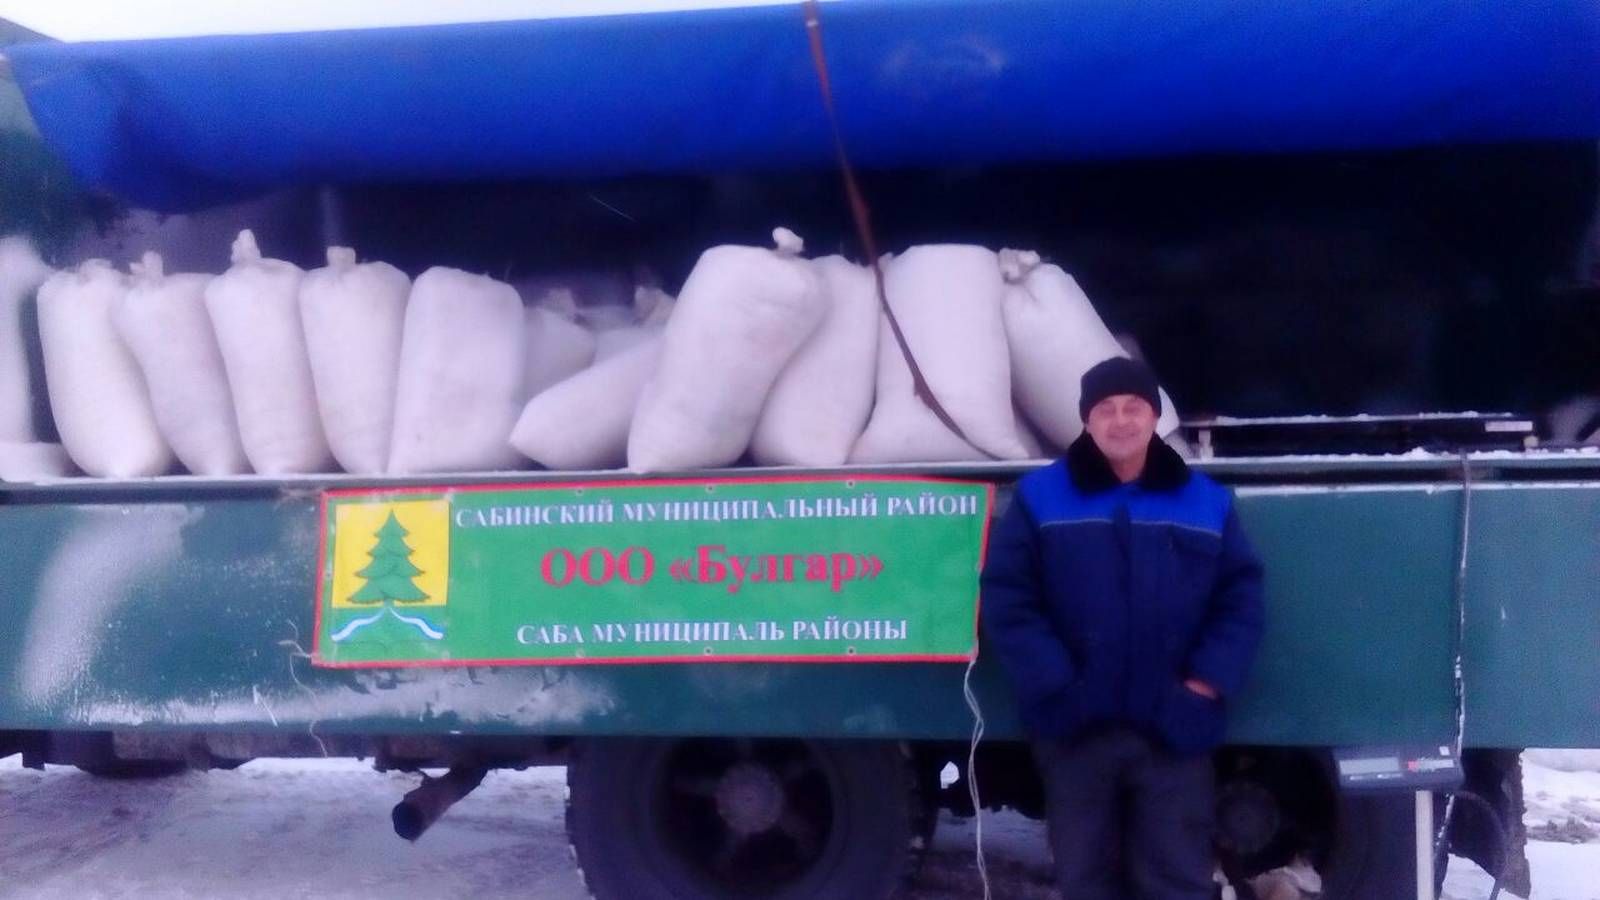 Казан шәһәренең Агросәнәгать паркында Саба муниципаль районының авыл хуҗалыгы продукциясе җитештерүчеләре катнашында ярминкә бара